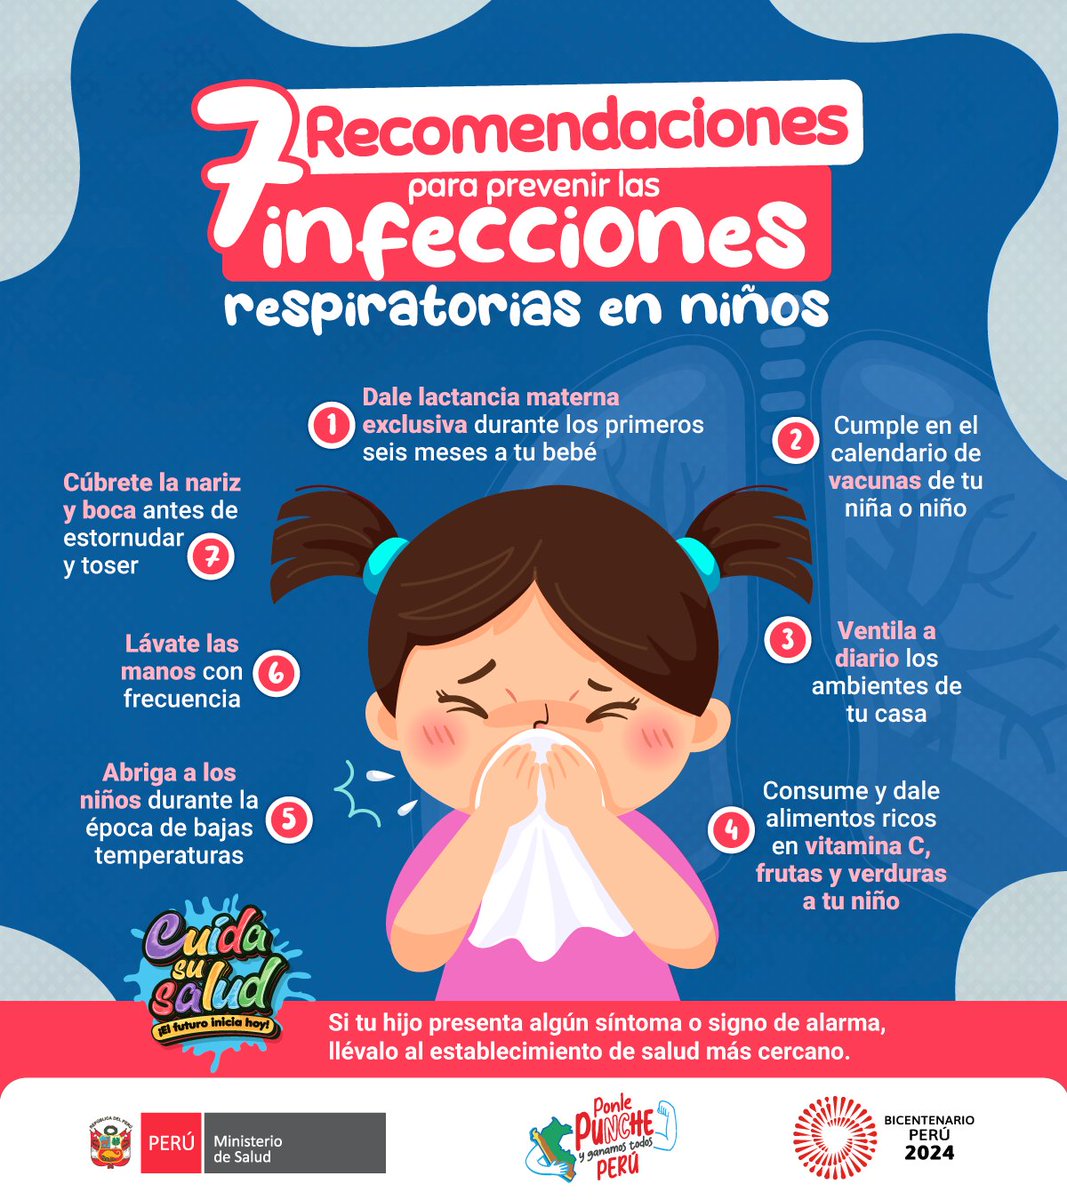 Ten en cuenta estas medidas para evitar infecciones respiratorias y mantener a niños y niñas saludables. #CuidaSuSalud